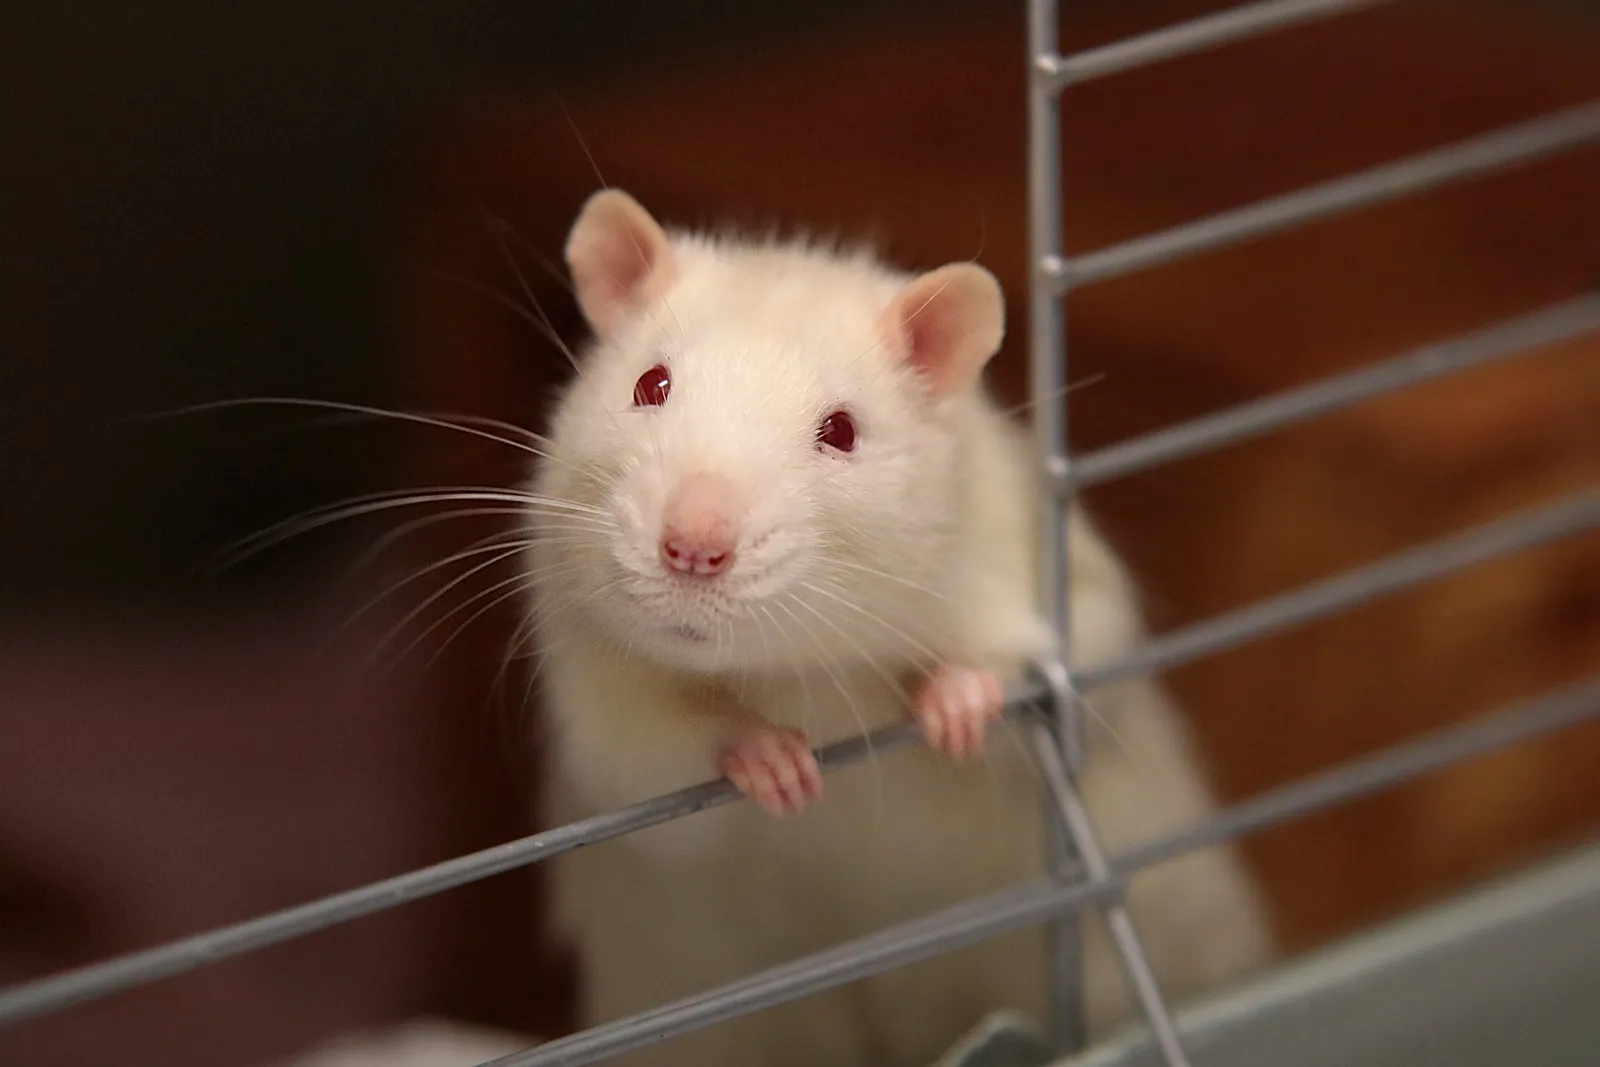 Mudah Didapat, 5 Cara Mengusir Tikus Menggunakan Bahan Rumahan